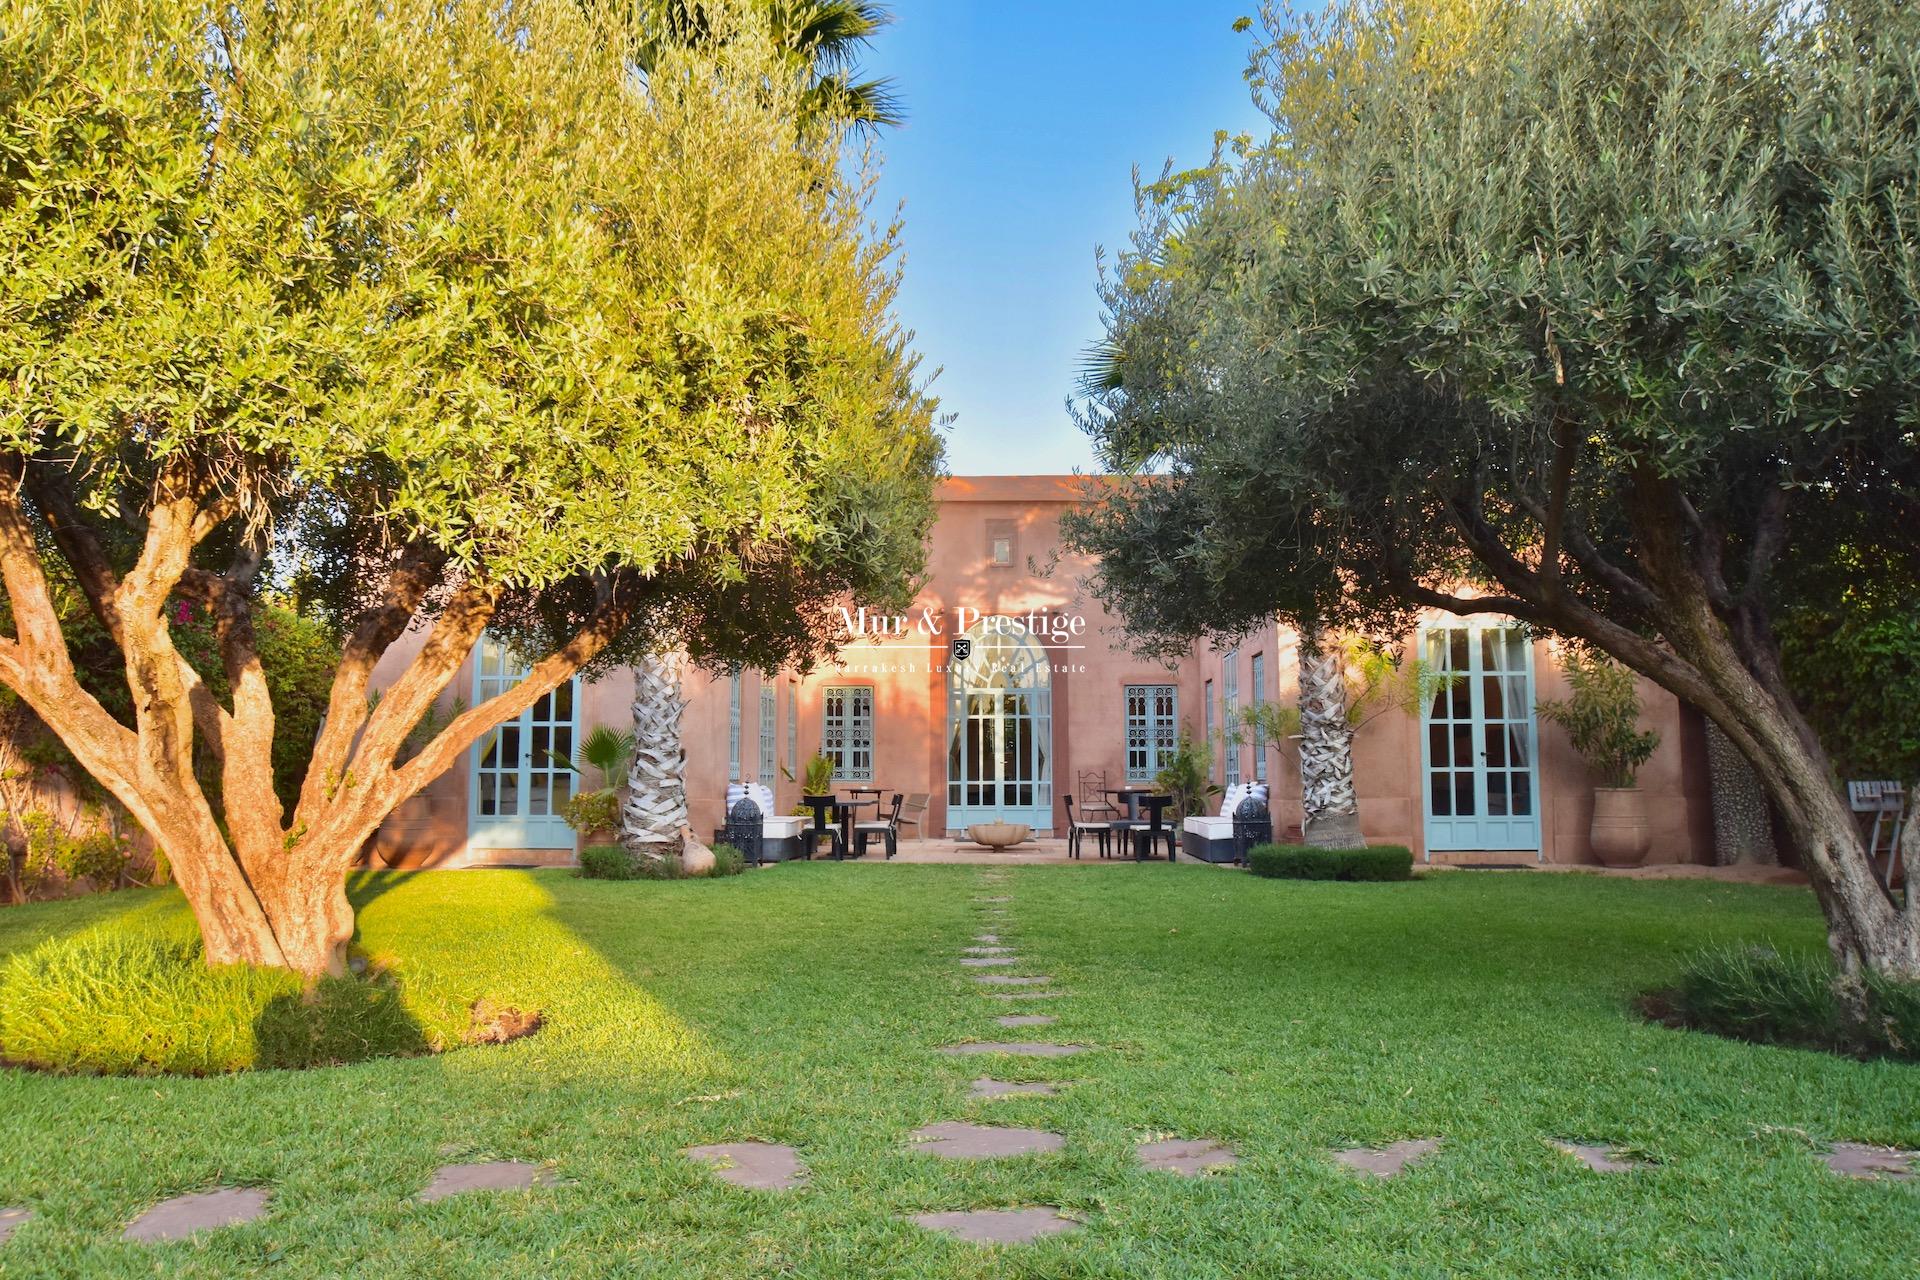 Maison Charles Boccara à Vendre à Marrakech - Agence Immobilière